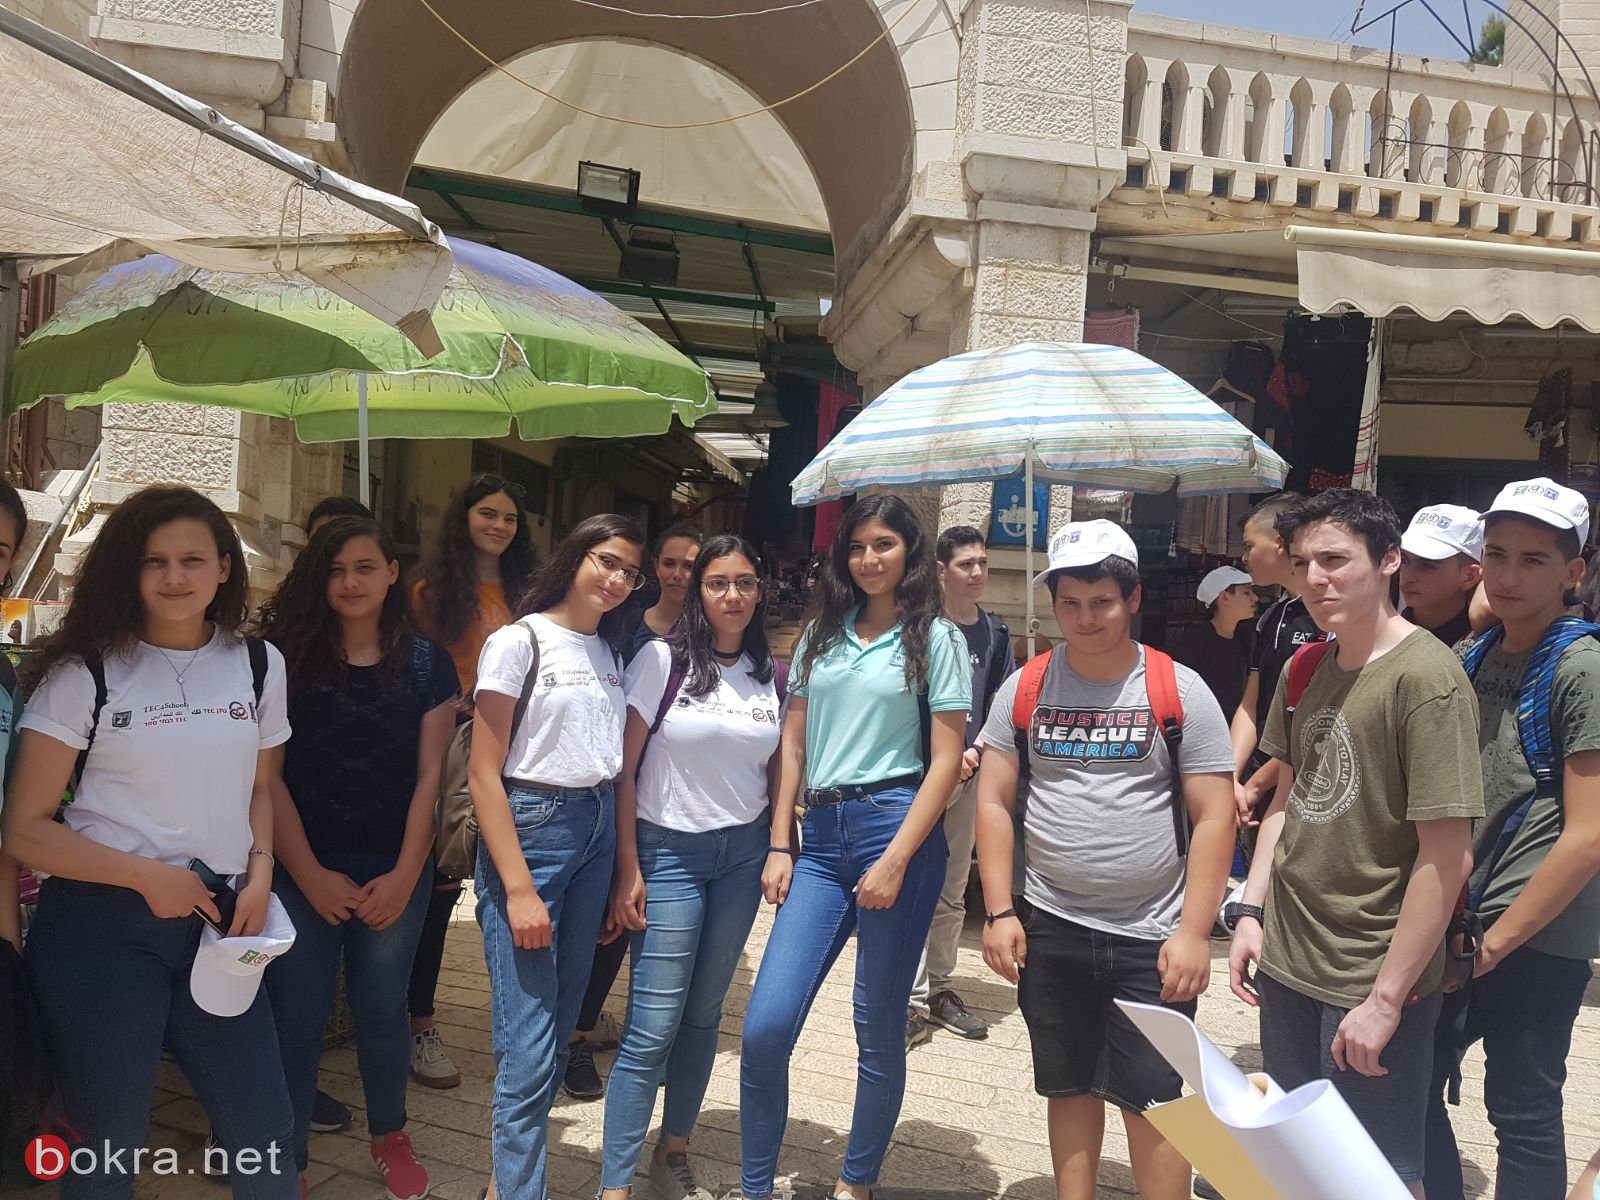 اعدادية الحلان- سخنين،ومطران الناصرة وتيخونت تل ابيب ضمن مشروع Tec4schools-41